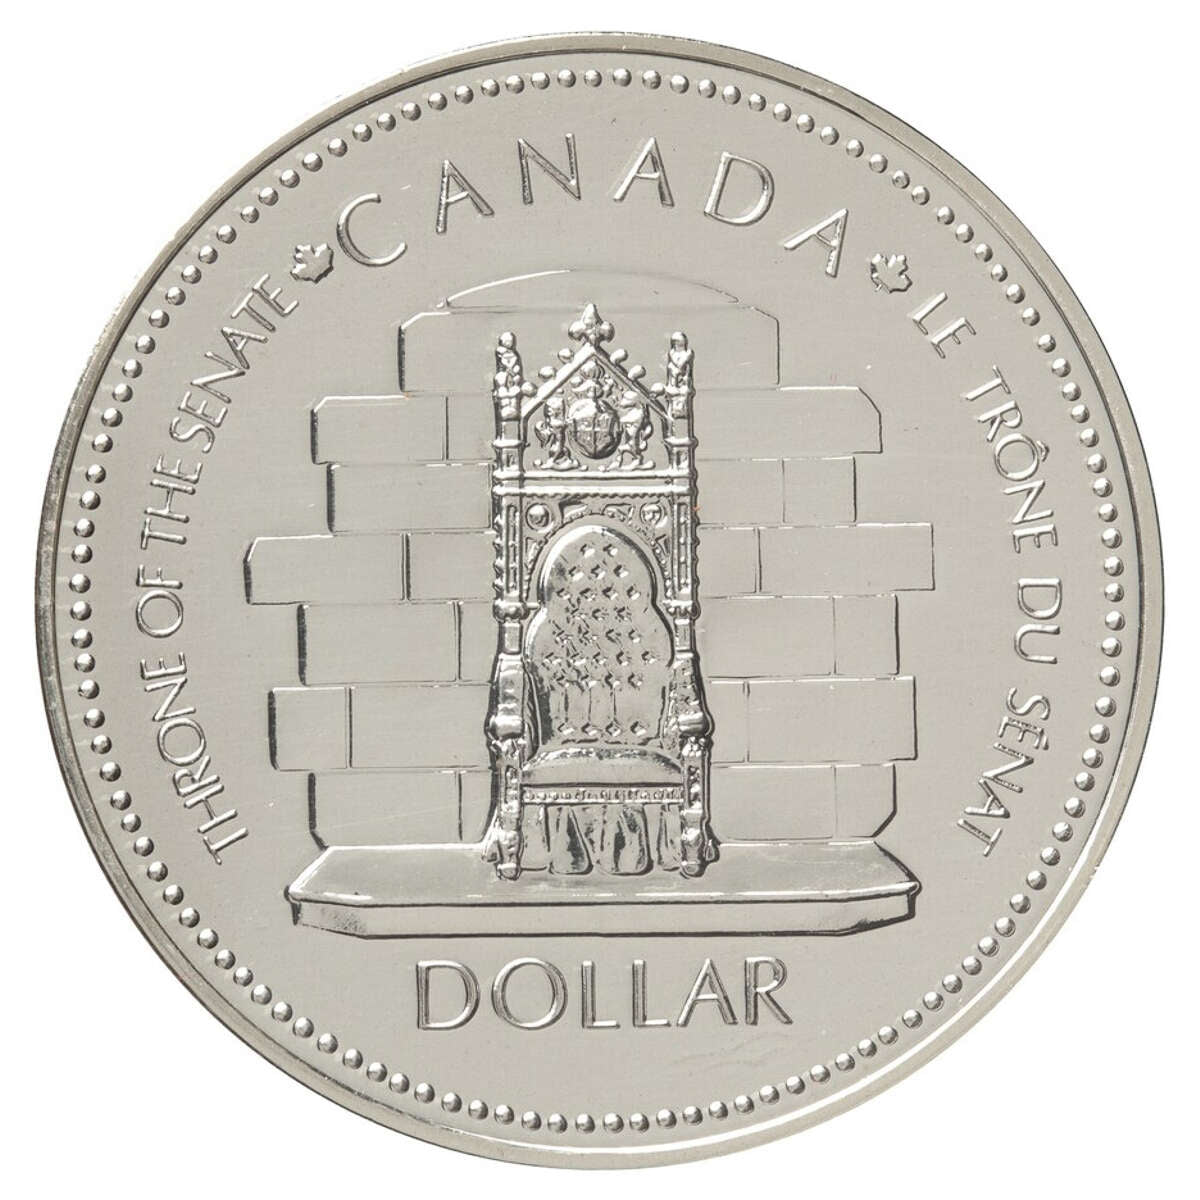 1977 $1 Queen Elizabeth Silver Jubilee - Silver Dollar